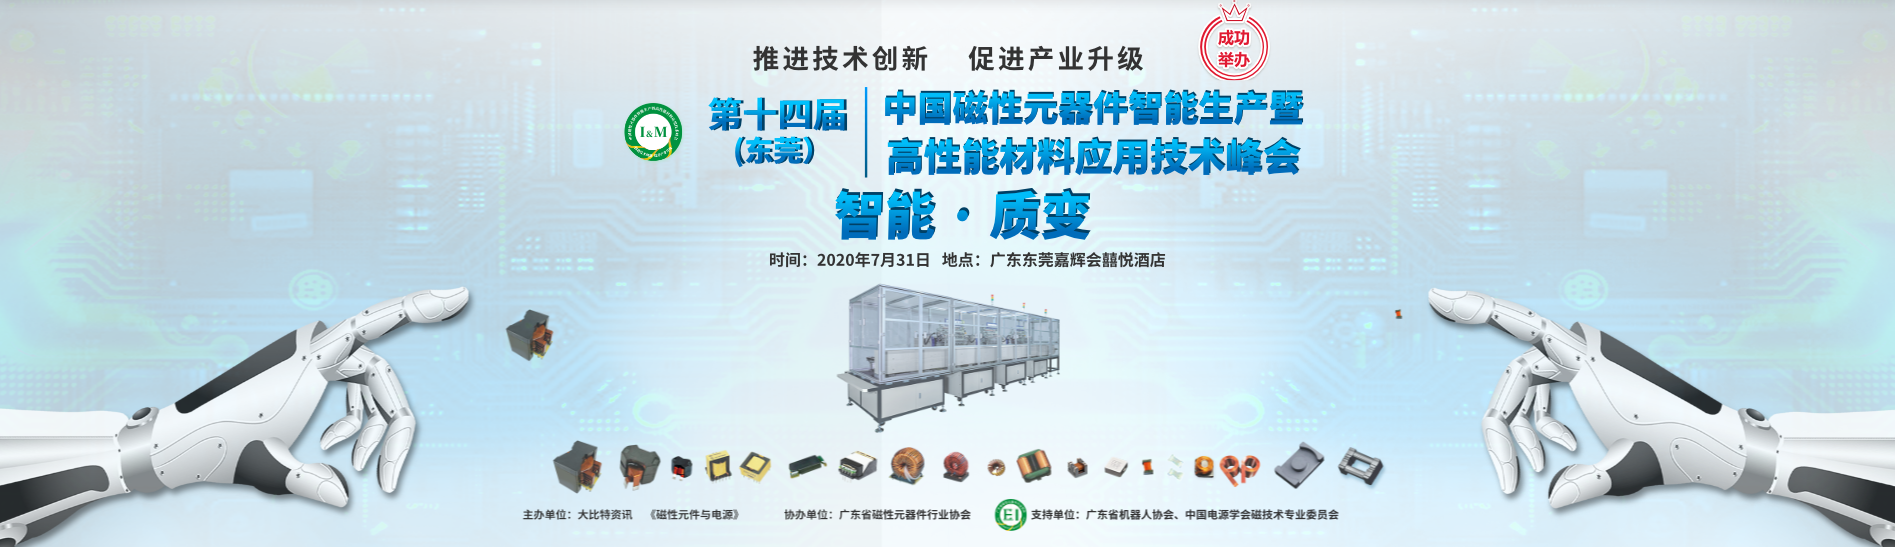 2021.5.21 (东莞) 第十六届中国磁性元器件智能生产暨高性能材料应用技术峰会